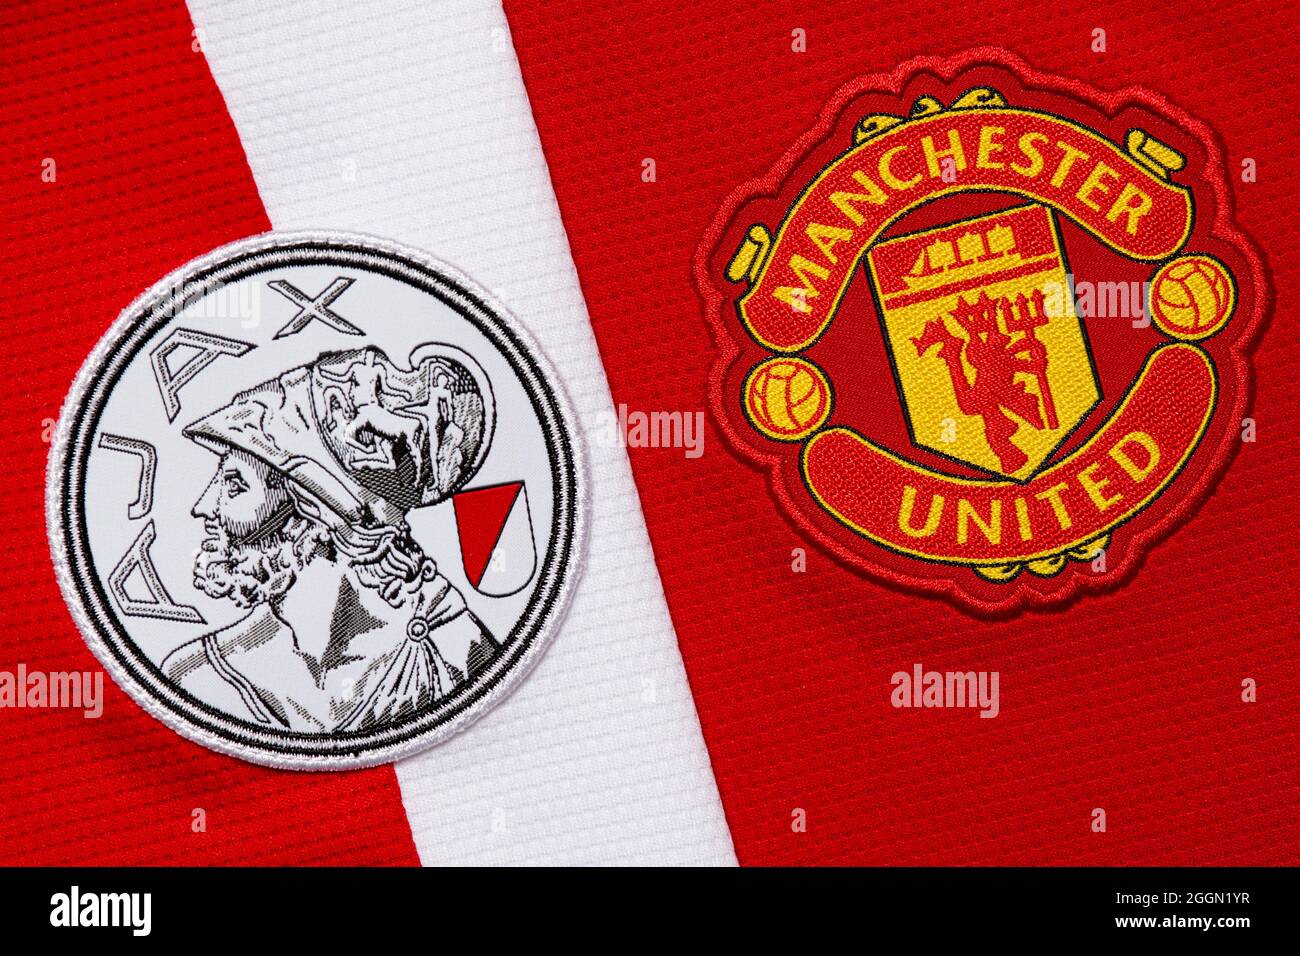 Nahaufnahme des Manchester United & Ajax Vereinswappens. Stockfoto